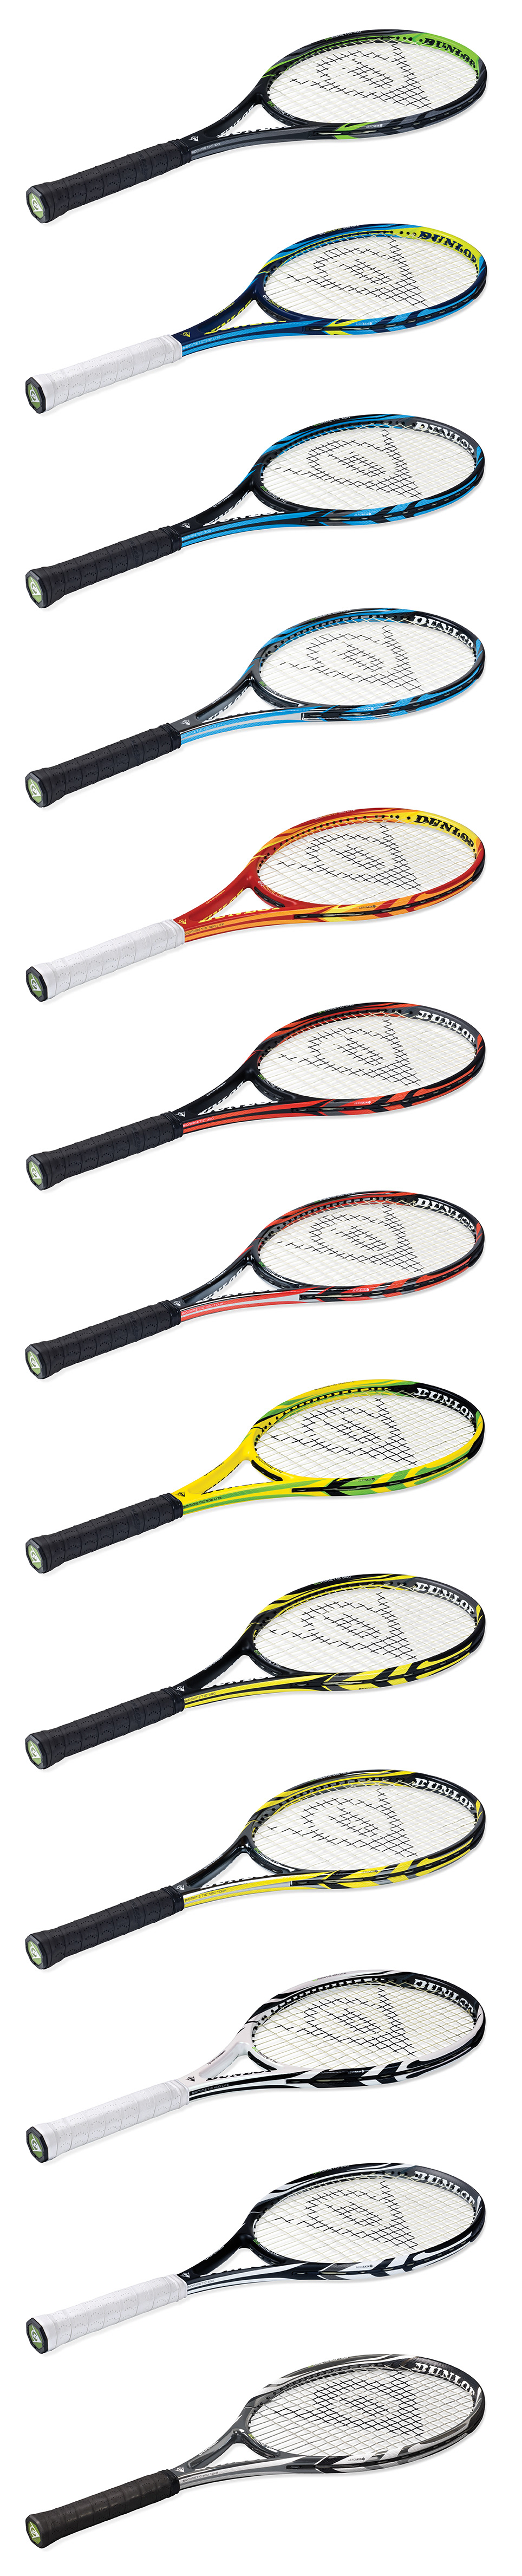 Dunlop Tennis Dunlop Racquet tennis racquet Racket tennis racket Dunlop Racket Dunlop Sport biomimetic Dunlop Biomimetic